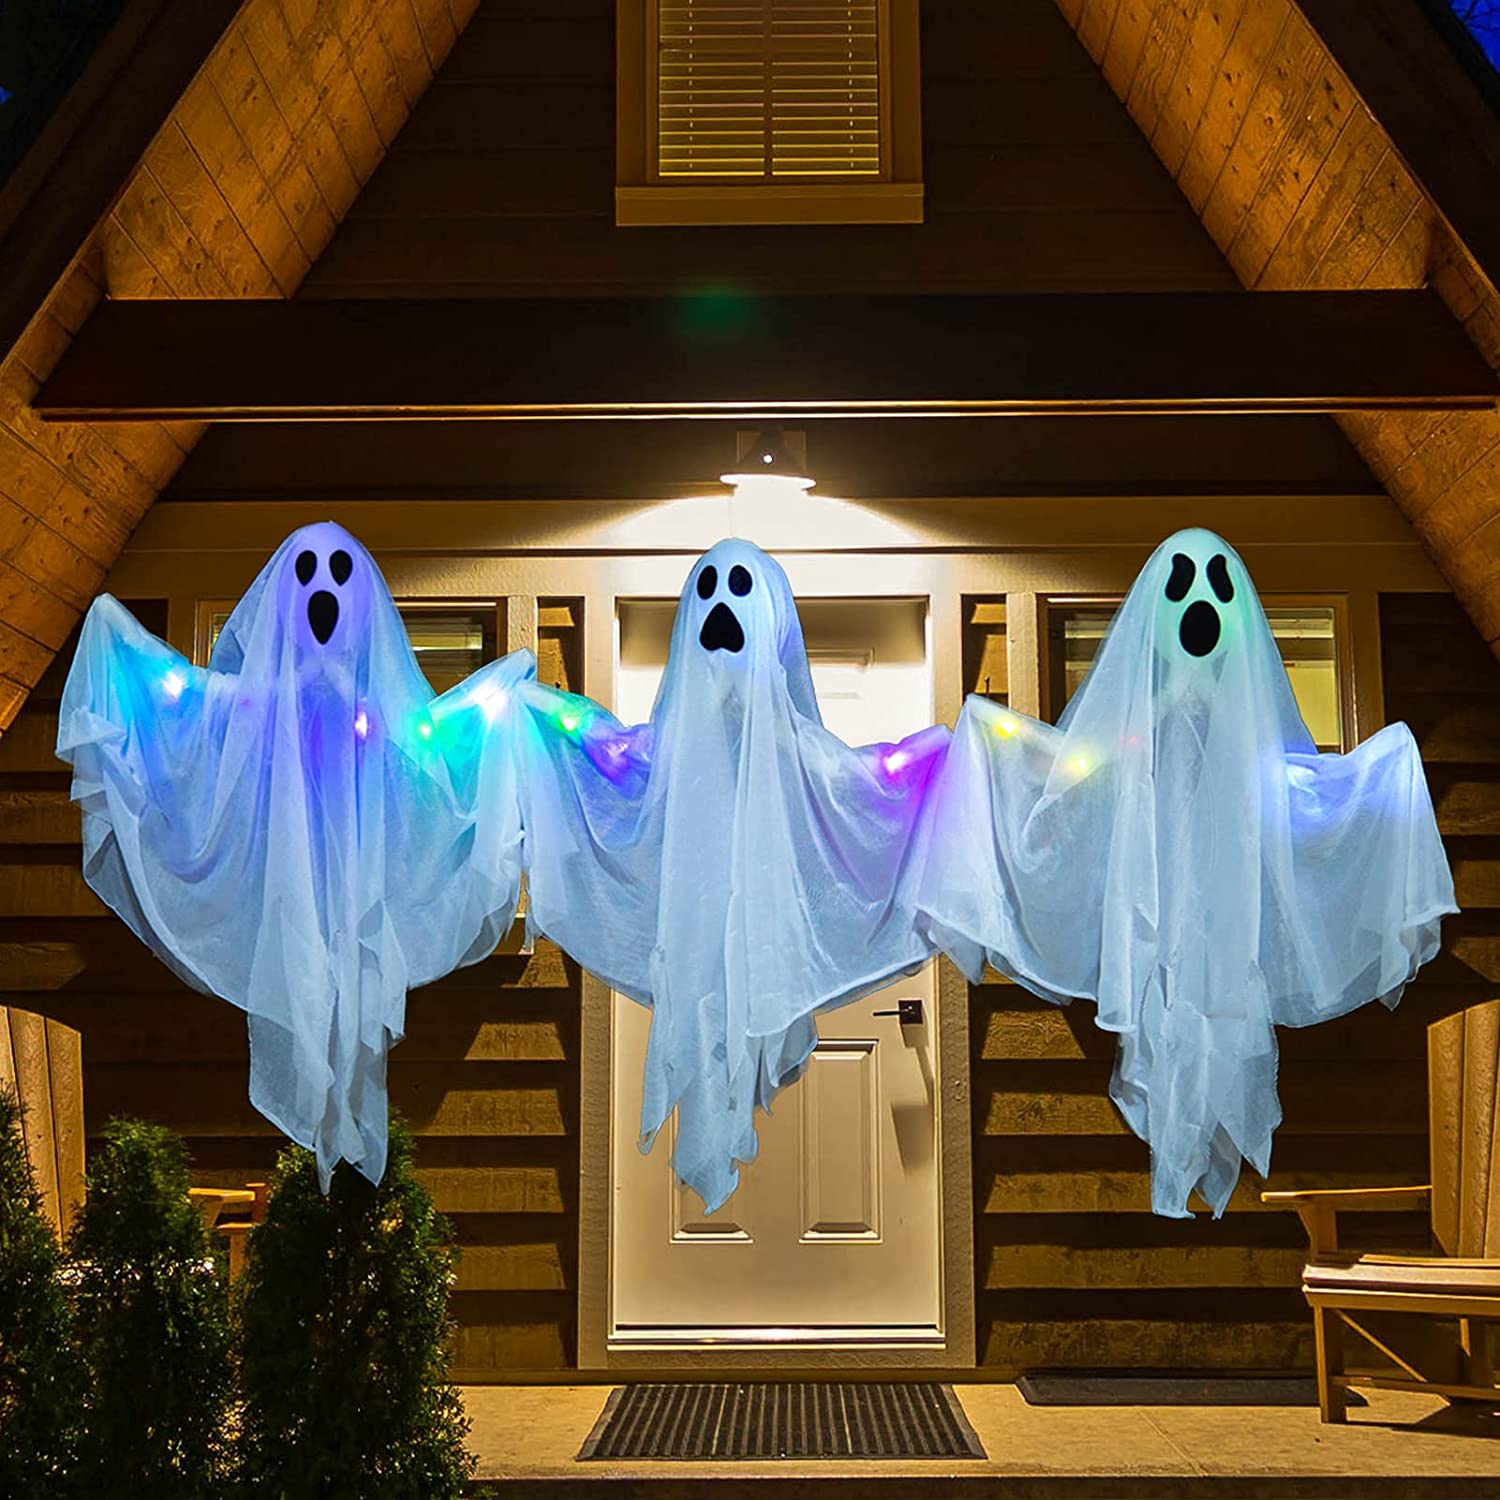 Fantômes dans la cour - La décoration d'Halloween vue de l'autre côté